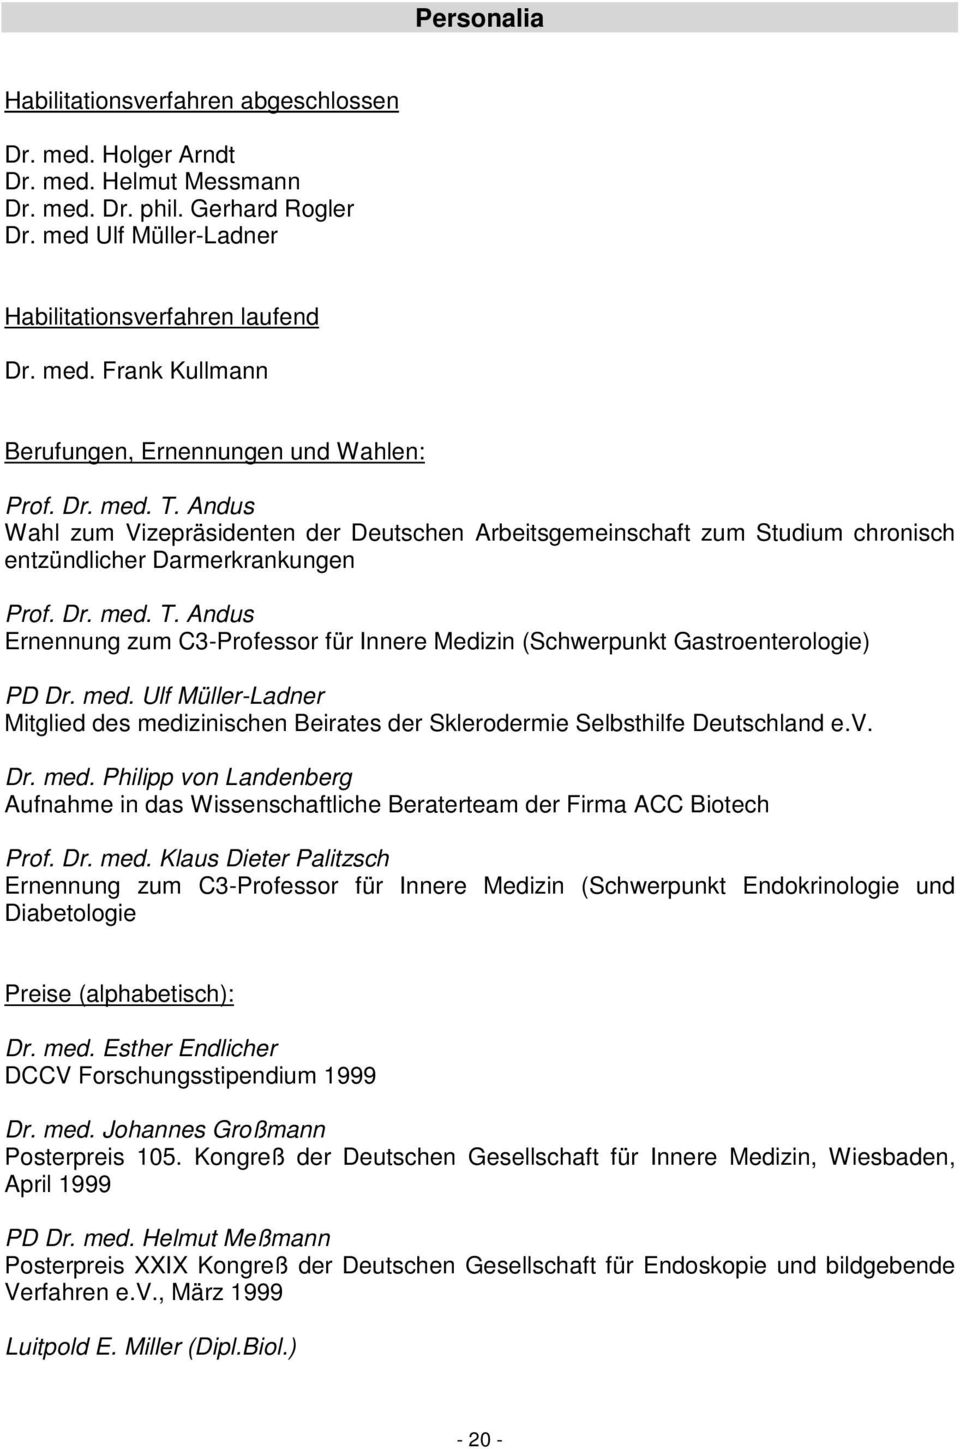 med. Ulf Müller-Ladner Mitglied des medizinischen Beirates der Sklerodermie Selbsthilfe Deutschland e.v. Dr. med. Philipp von Landenberg Aufnahme in das Wissenschaftliche Beraterteam der Firma ACC Biotech Prof.